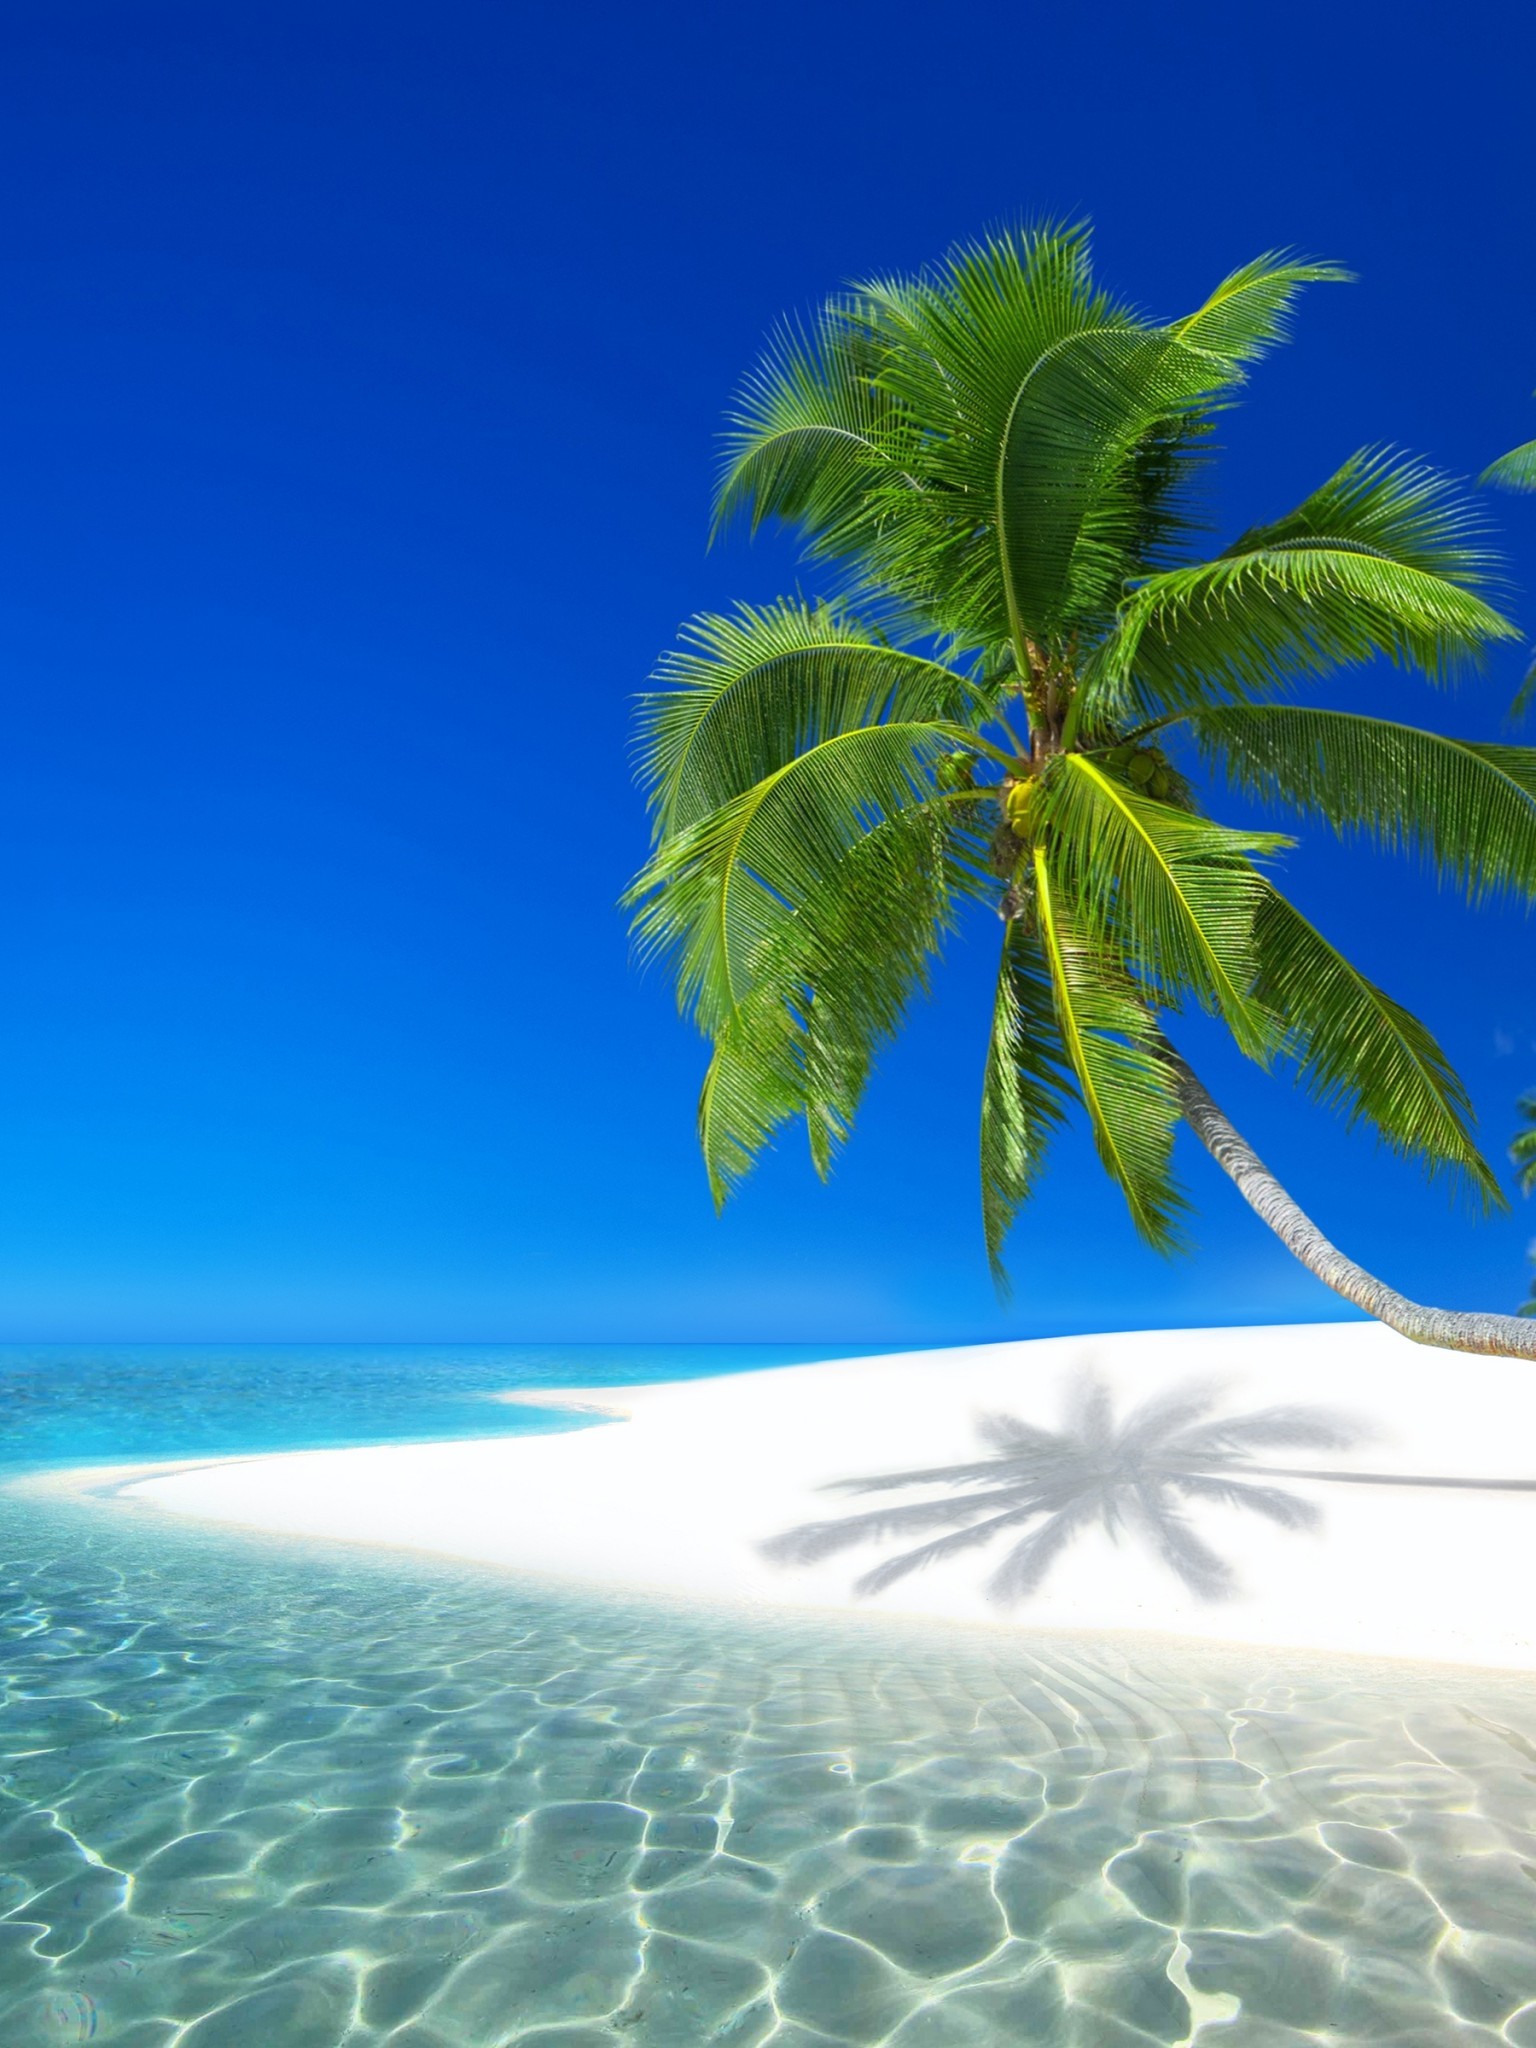 Seychelles Resort, Ocean, Holiday, Beach, Island - Pusheen Wallpaper Summer - HD Wallpaper 